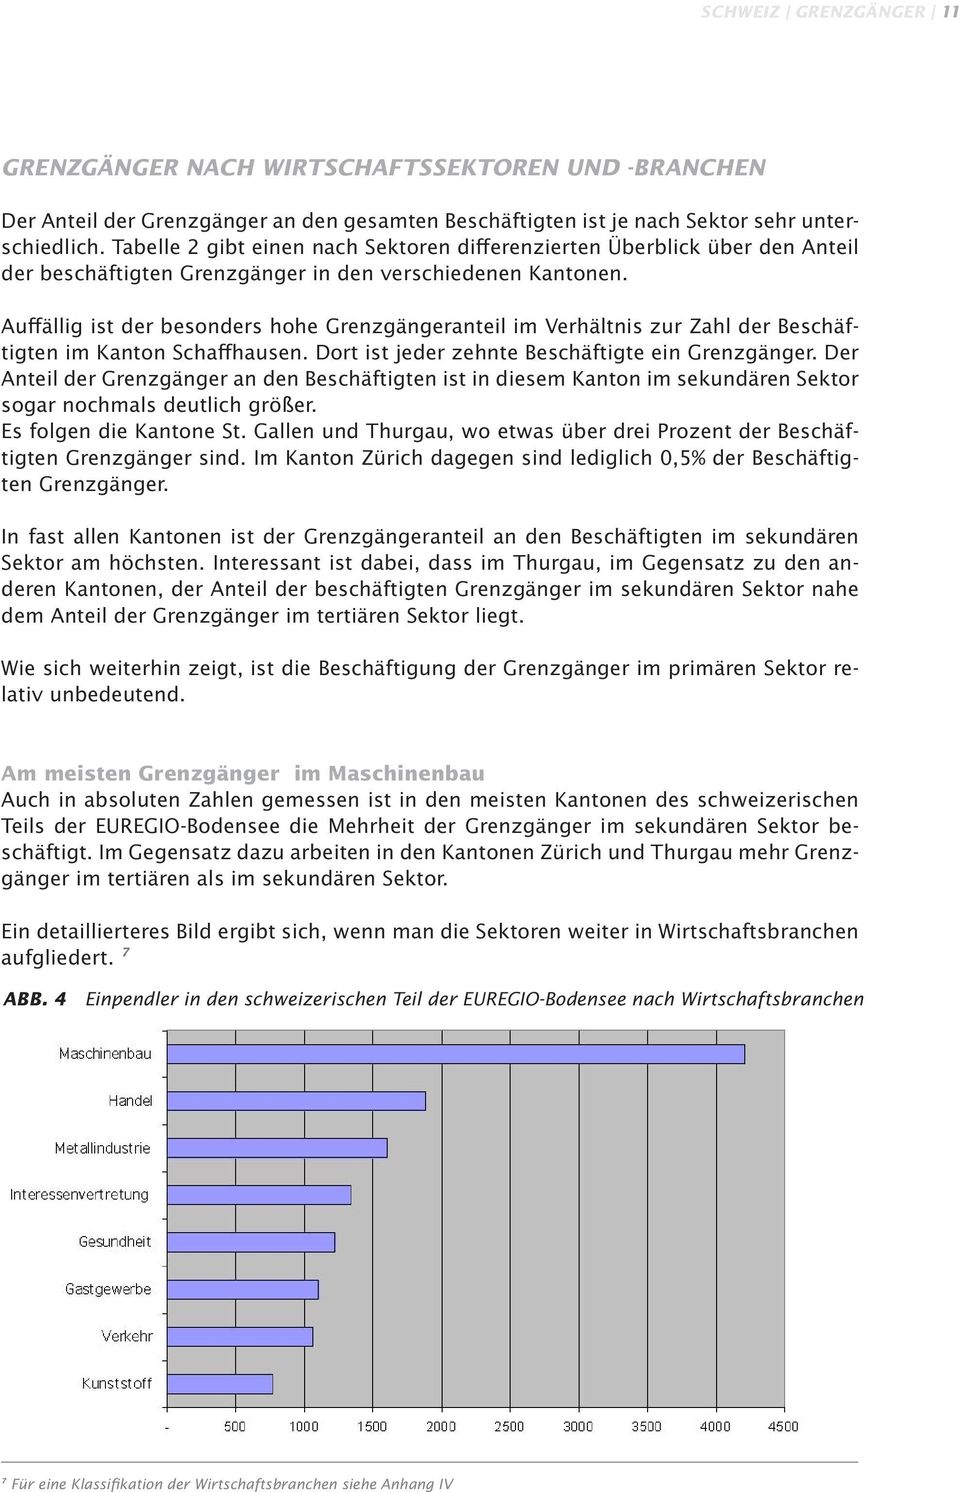 Auffällig ist der besonders hohe Grenzgängeranteil im Verhältnis zur Zahl der Beschäftigten im Kanton Schaffhausen. Dort ist jeder zehnte Beschäftigte ein Grenzgänger.